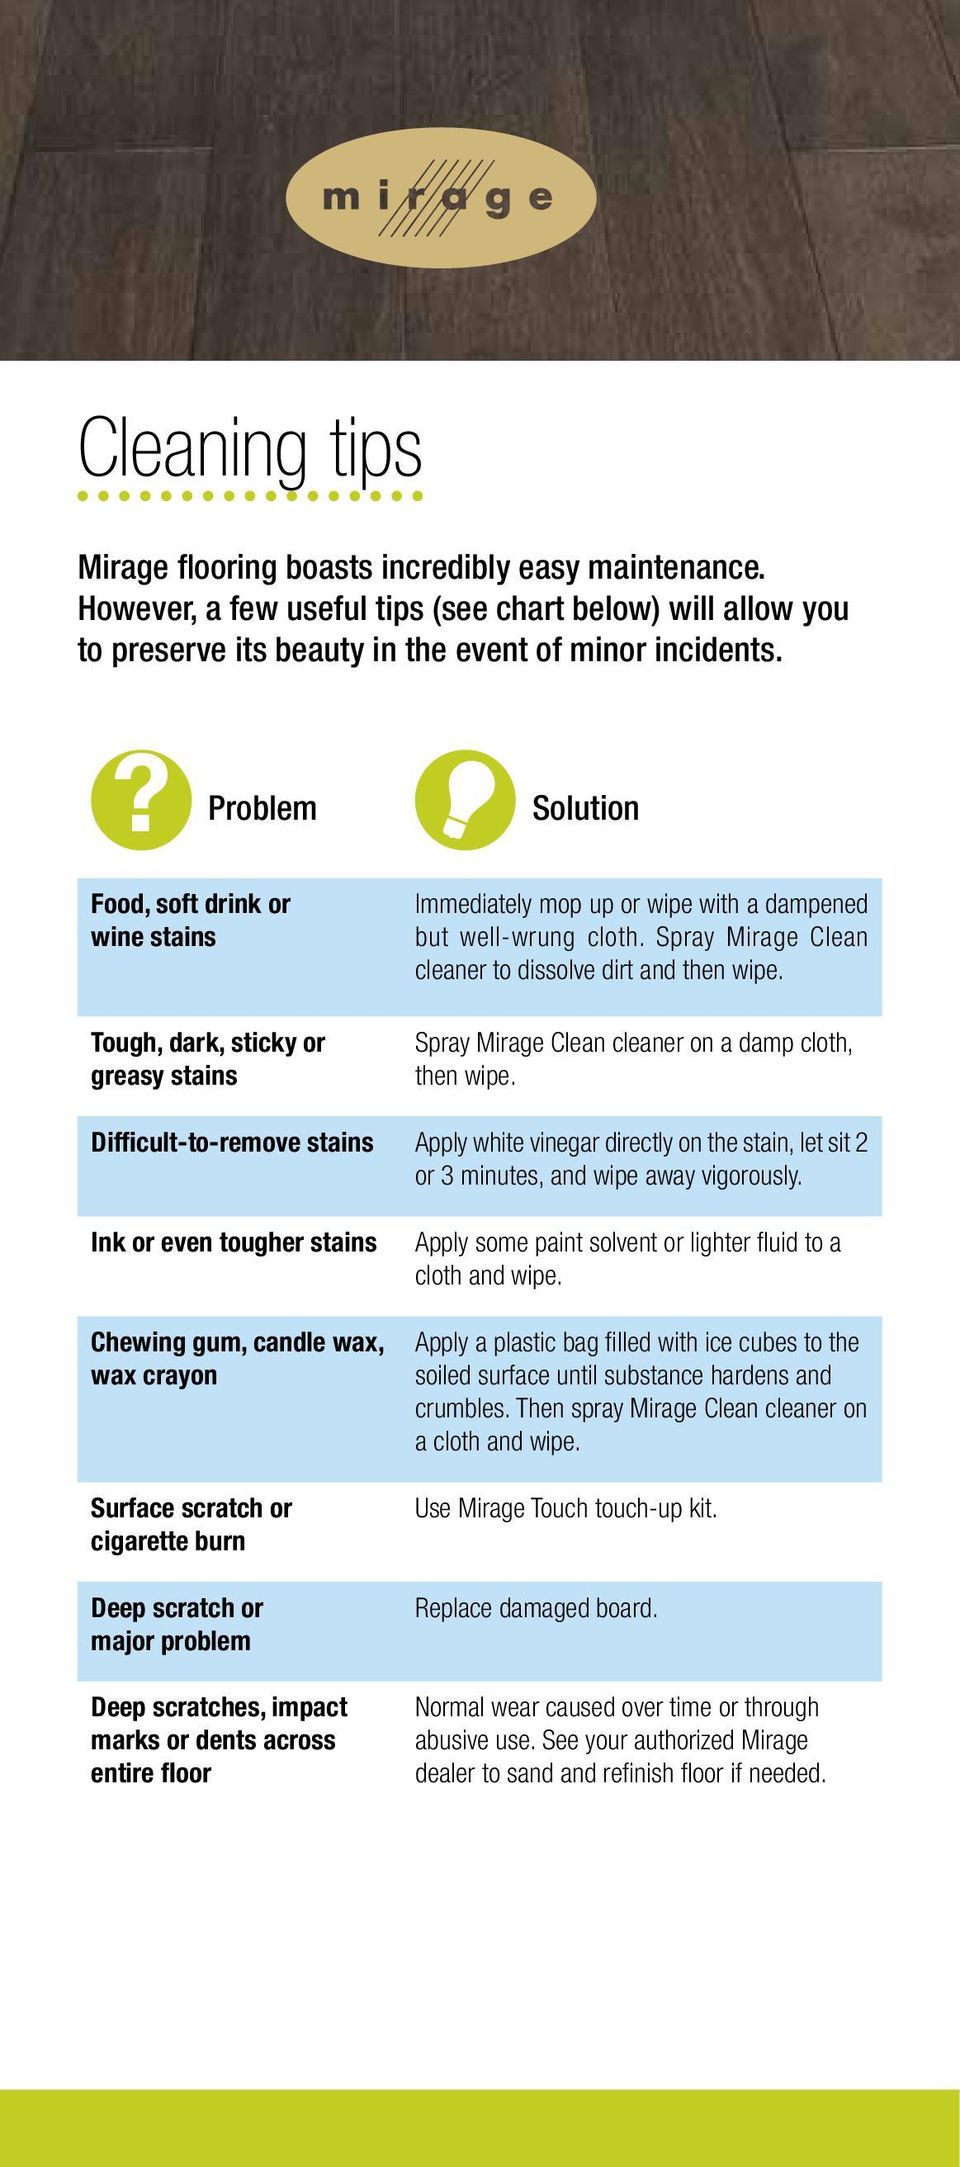 Spray Mirage Clean cleaner to dissolve dirt and then wipe. Spray Mirage Clean cleaner on a damp cloth, then wipe.